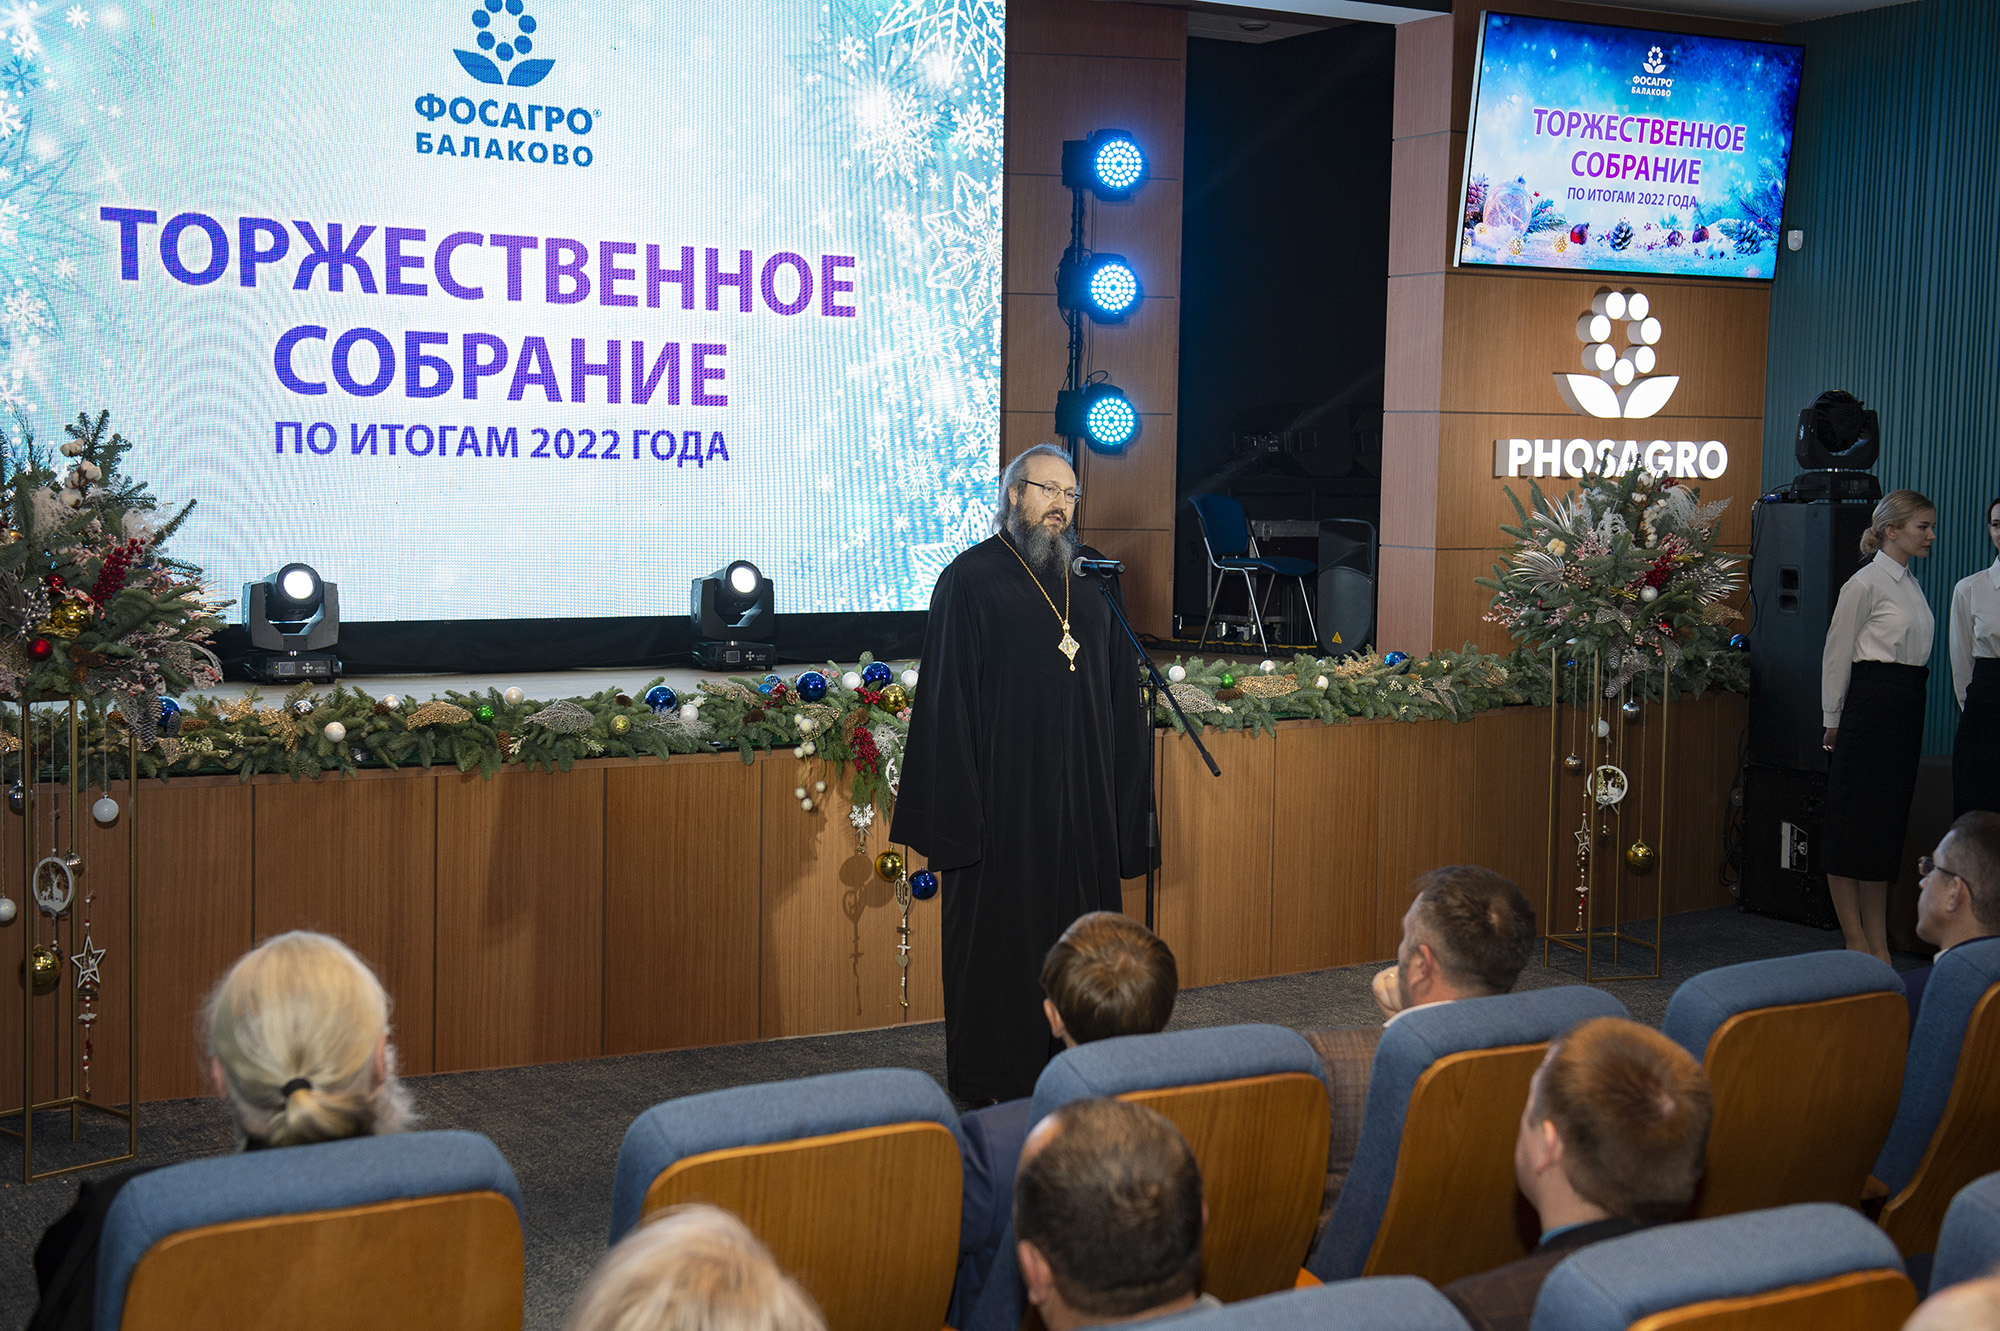 Епископ Варфоломей принял участие в собрании Балаковского филиала АО «Апатит», посвященном подведению итогов года